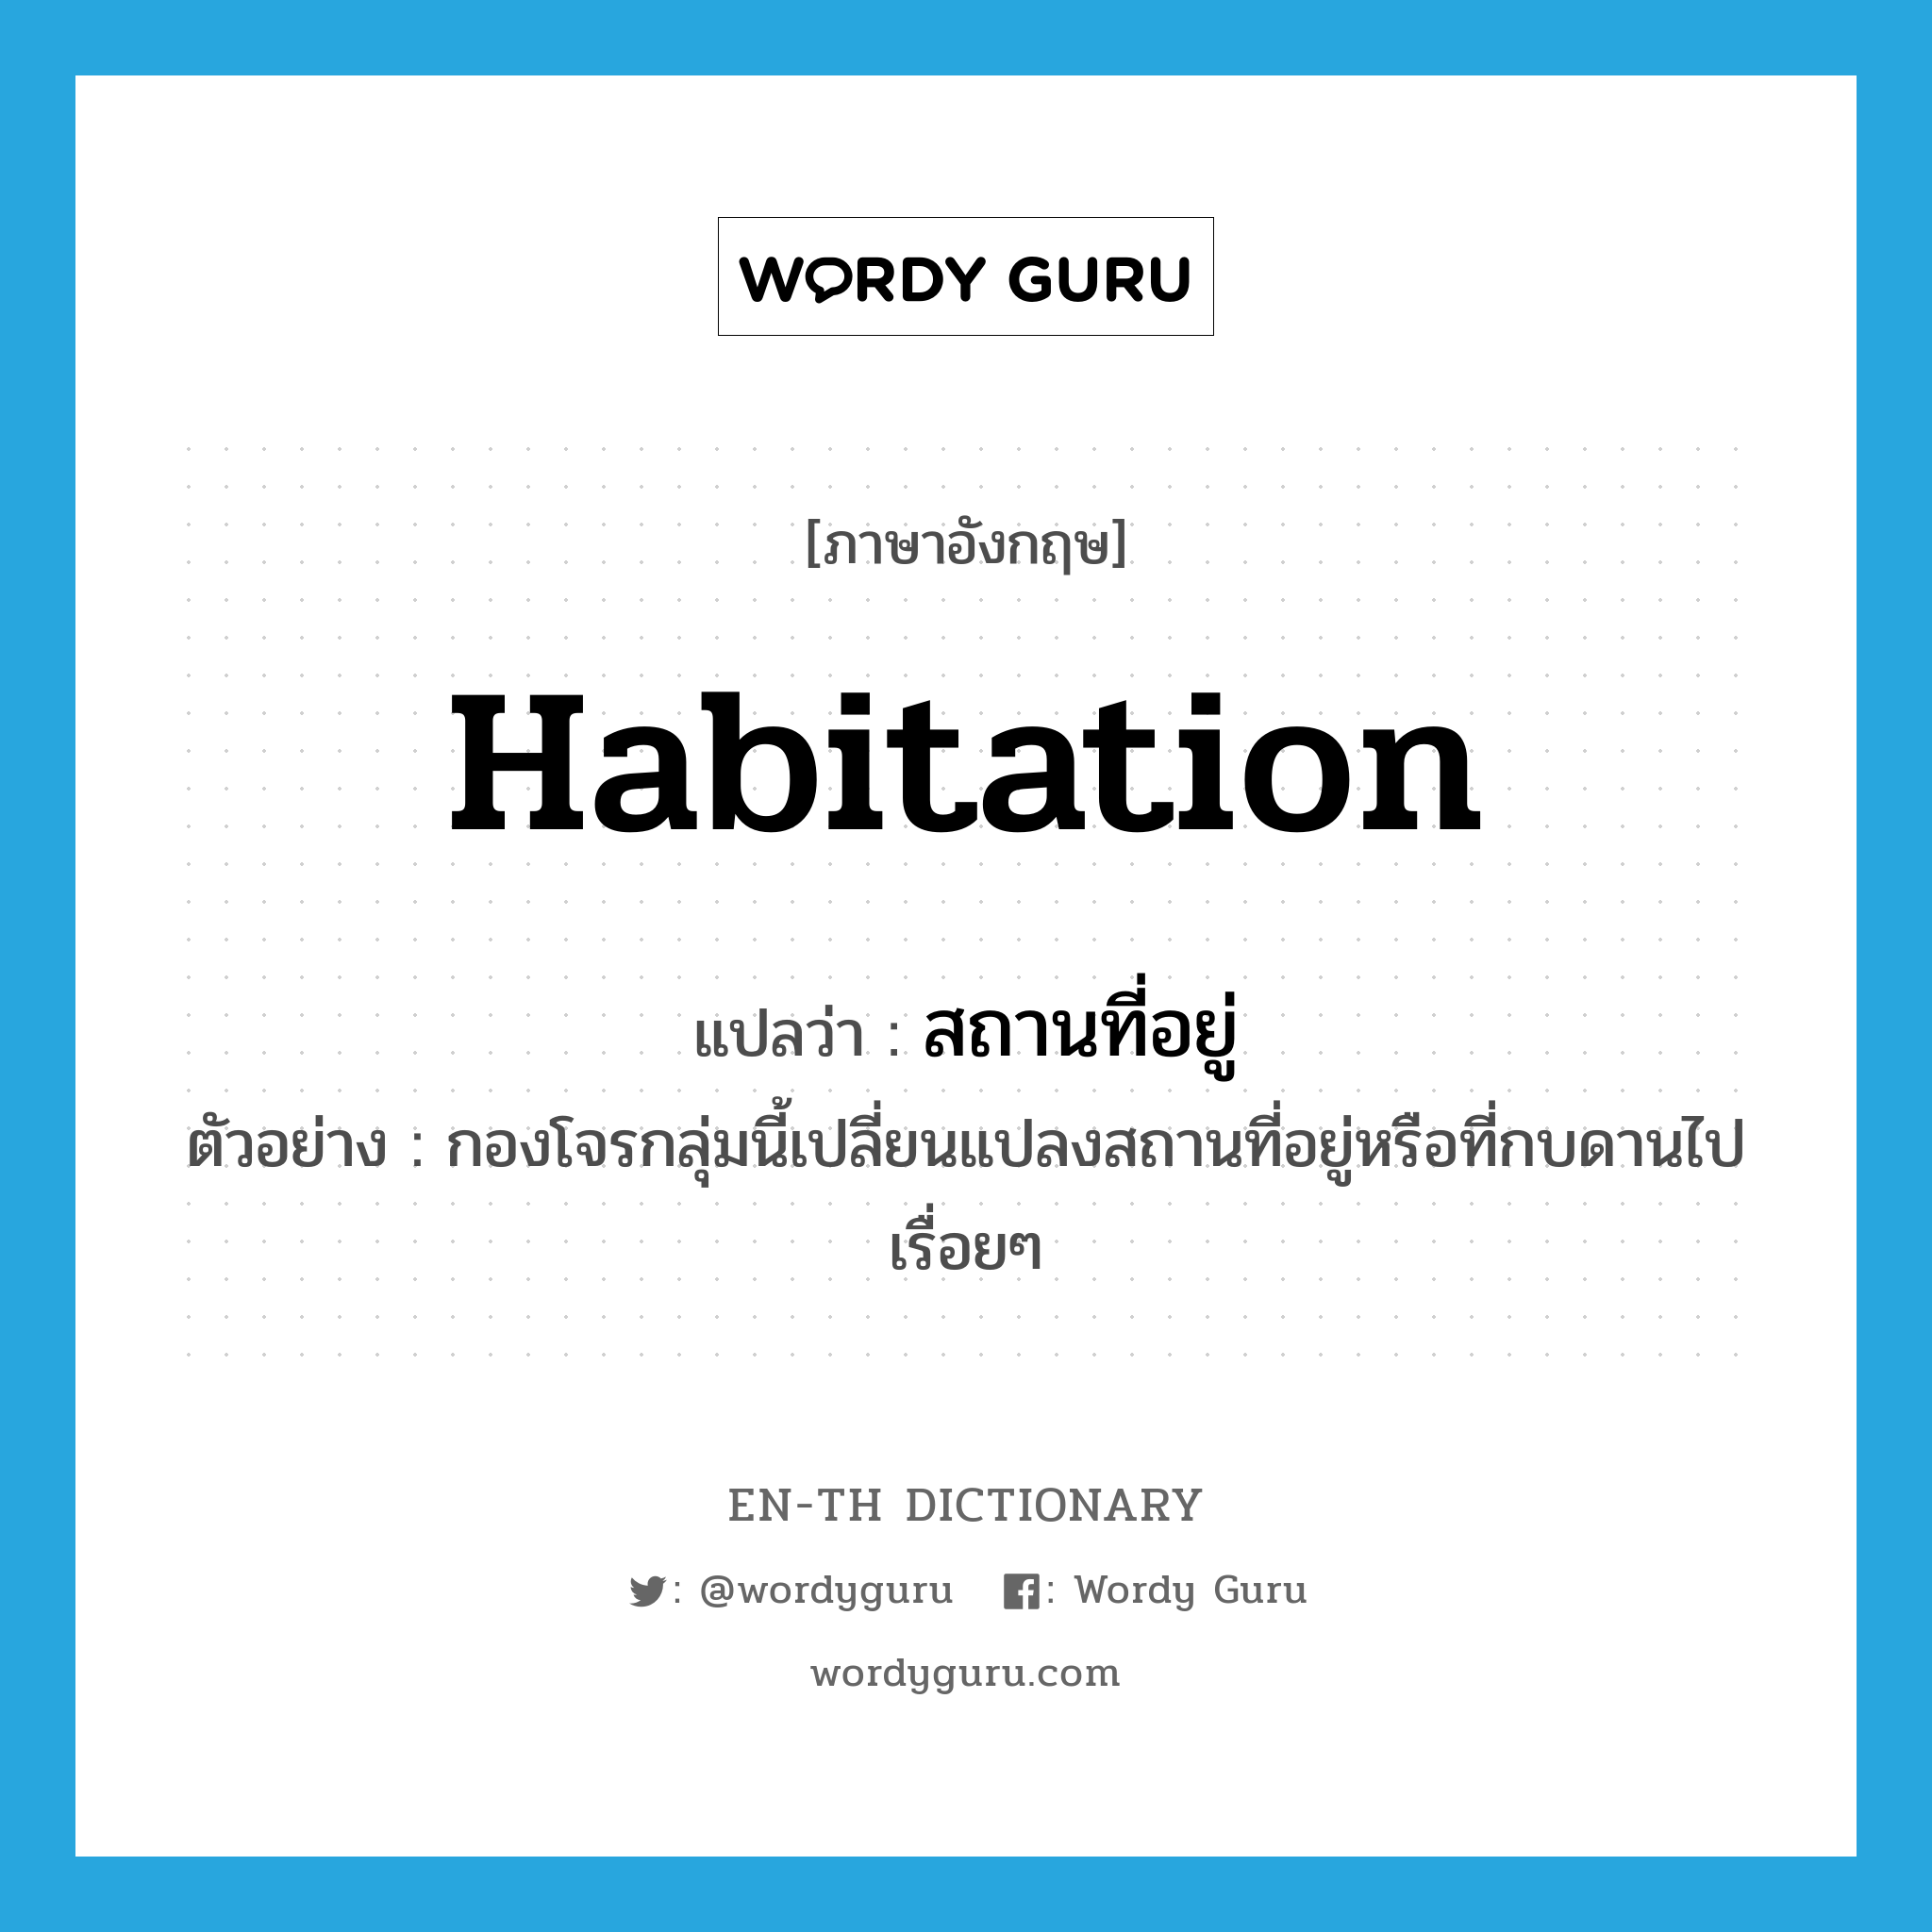 habitation แปลว่า?, คำศัพท์ภาษาอังกฤษ habitation แปลว่า สถานที่อยู่ ประเภท N ตัวอย่าง กองโจรกลุ่มนี้เปลี่ยนแปลงสถานที่อยู่หรือที่กบดานไปเรื่อยๆ หมวด N